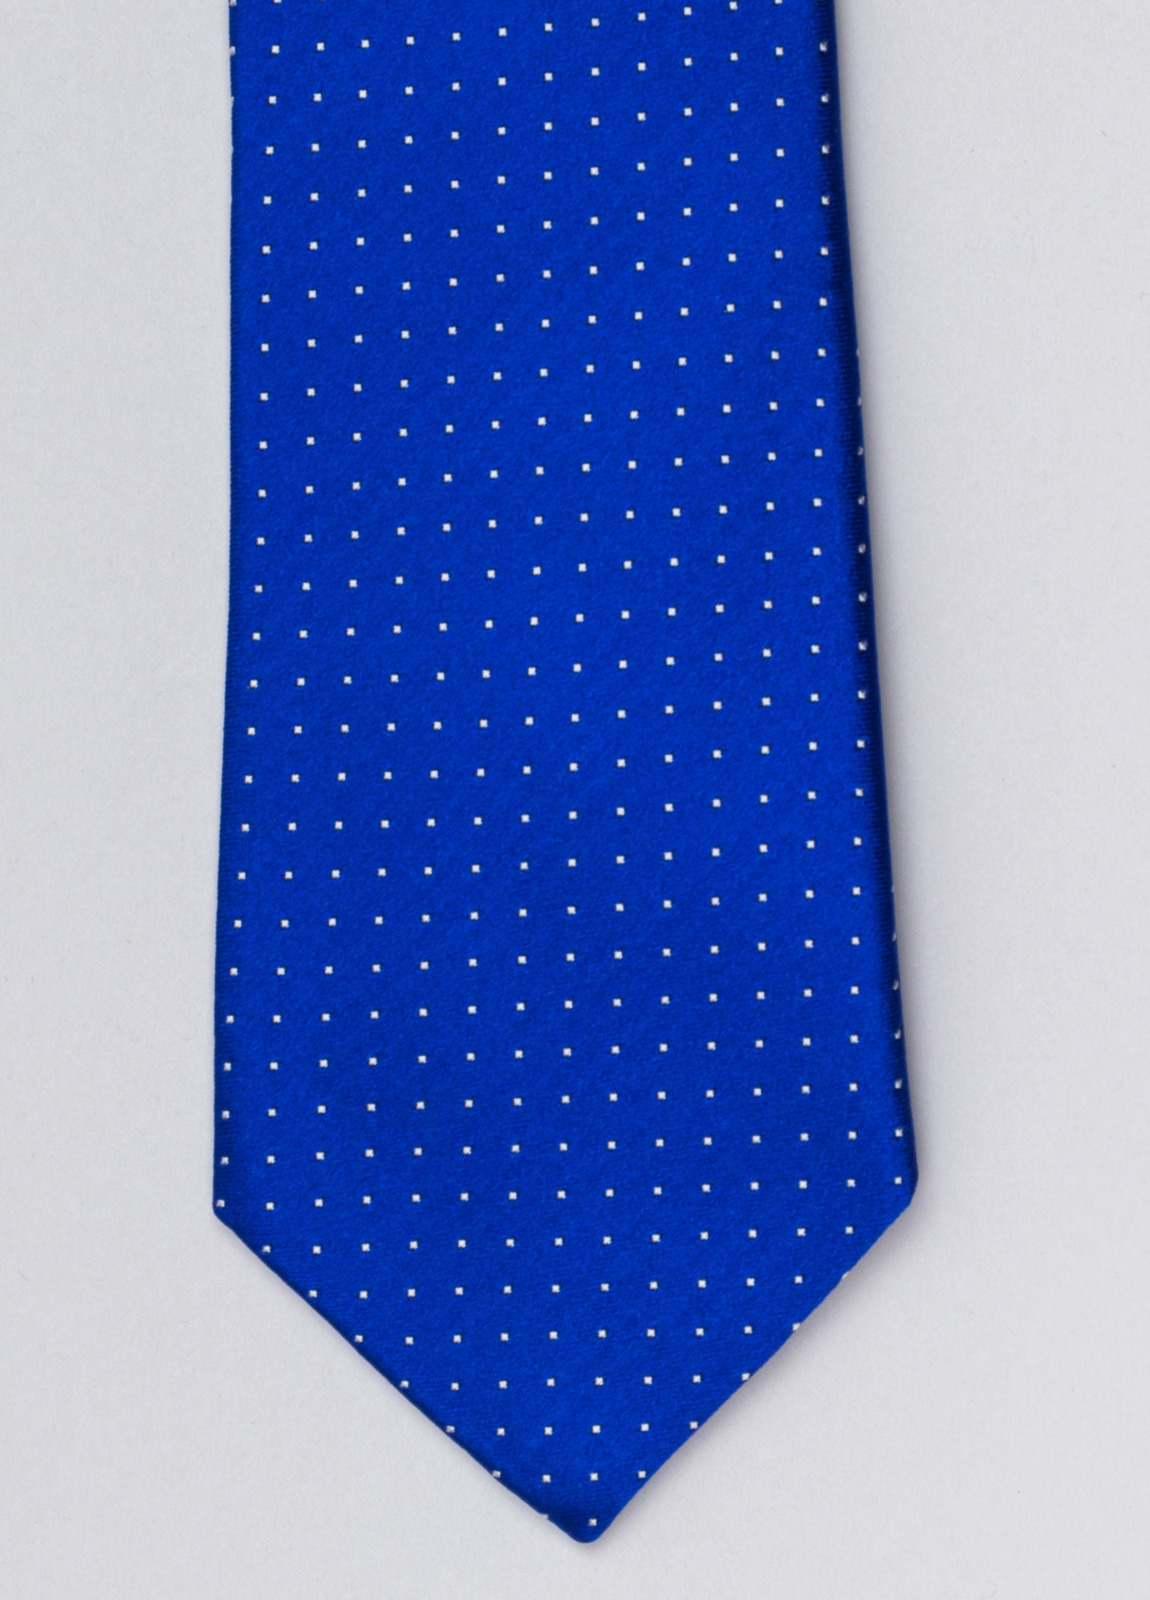 Corbata FUREST COLECCIÓN color azulón con micro topito